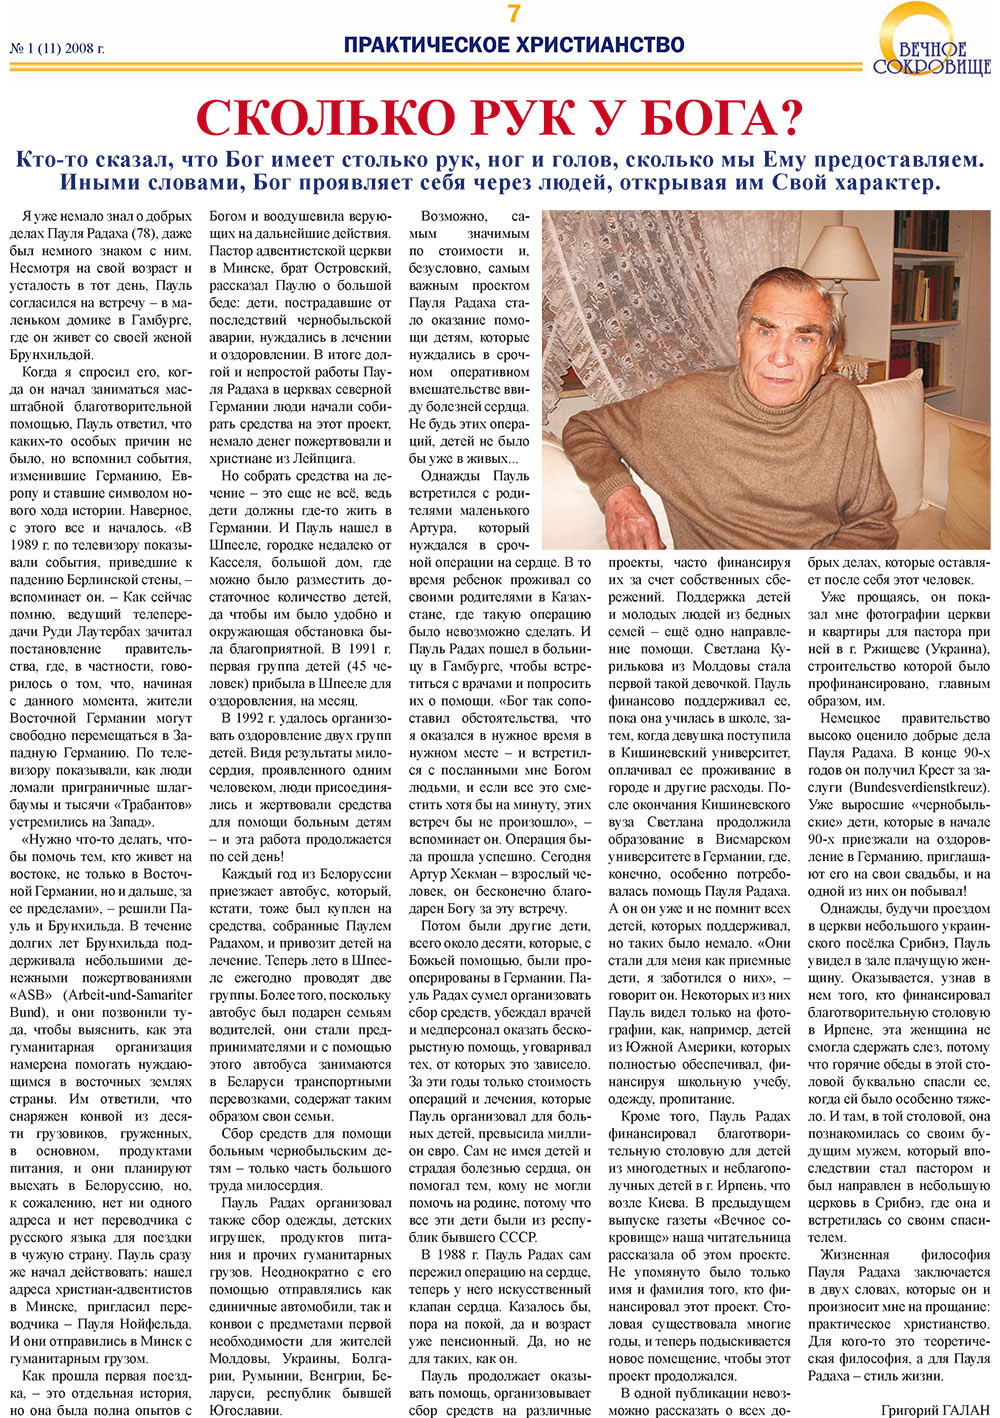 Вечное сокровище (газета). 2008 год, номер 1, стр. 7